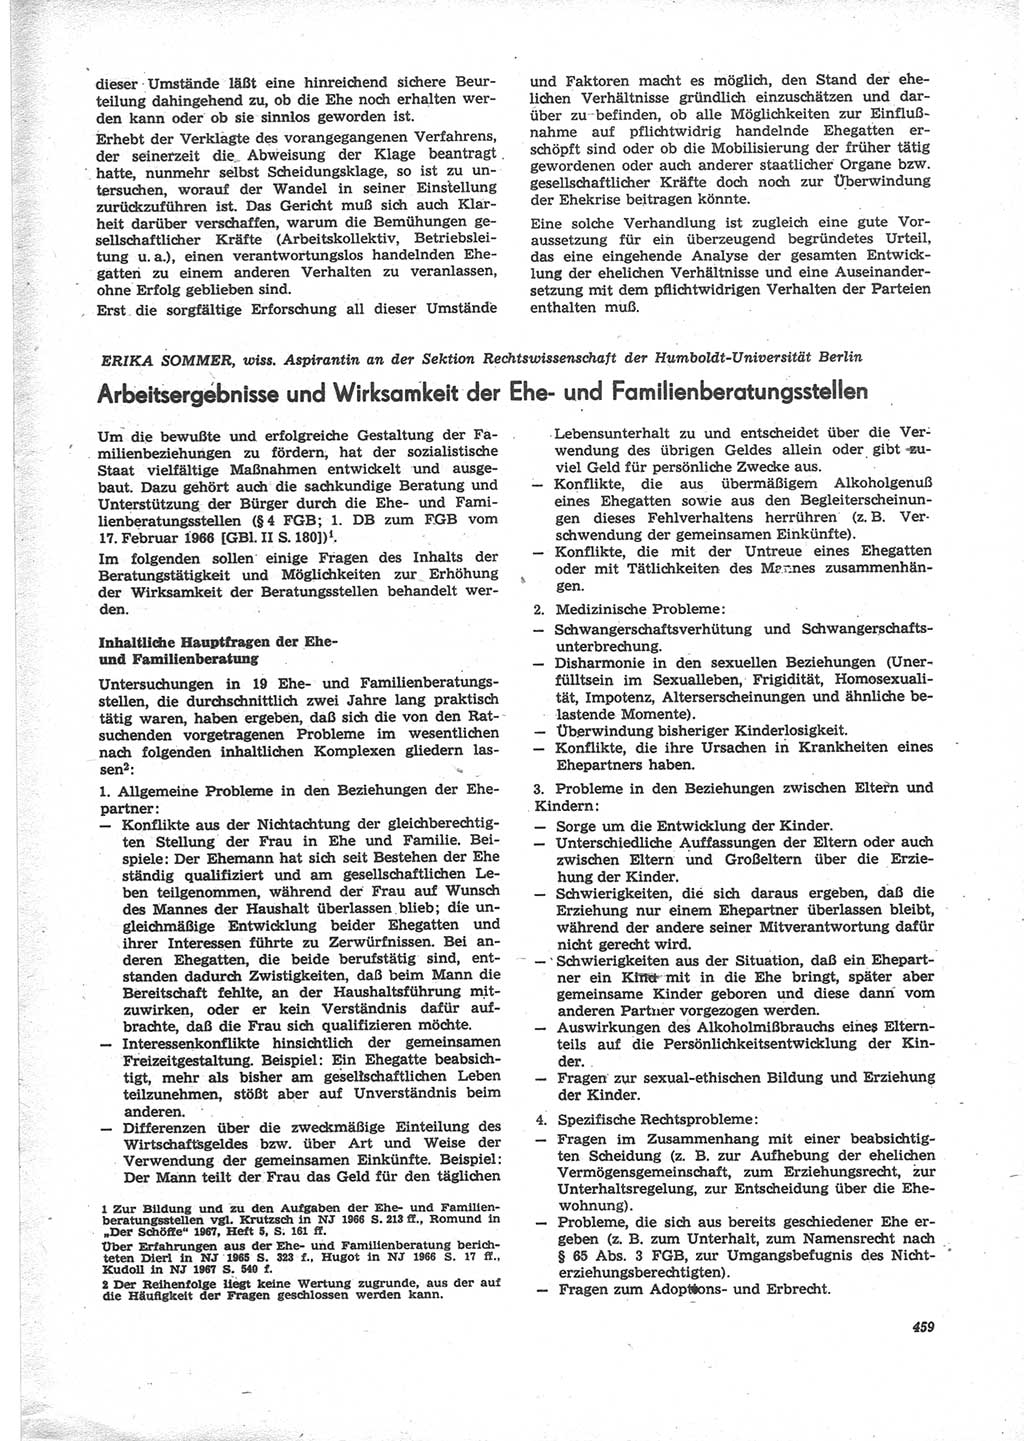 Neue Justiz (NJ), Zeitschrift für Recht und Rechtswissenschaft [Deutsche Demokratische Republik (DDR)], 24. Jahrgang 1970, Seite 459 (NJ DDR 1970, S. 459)